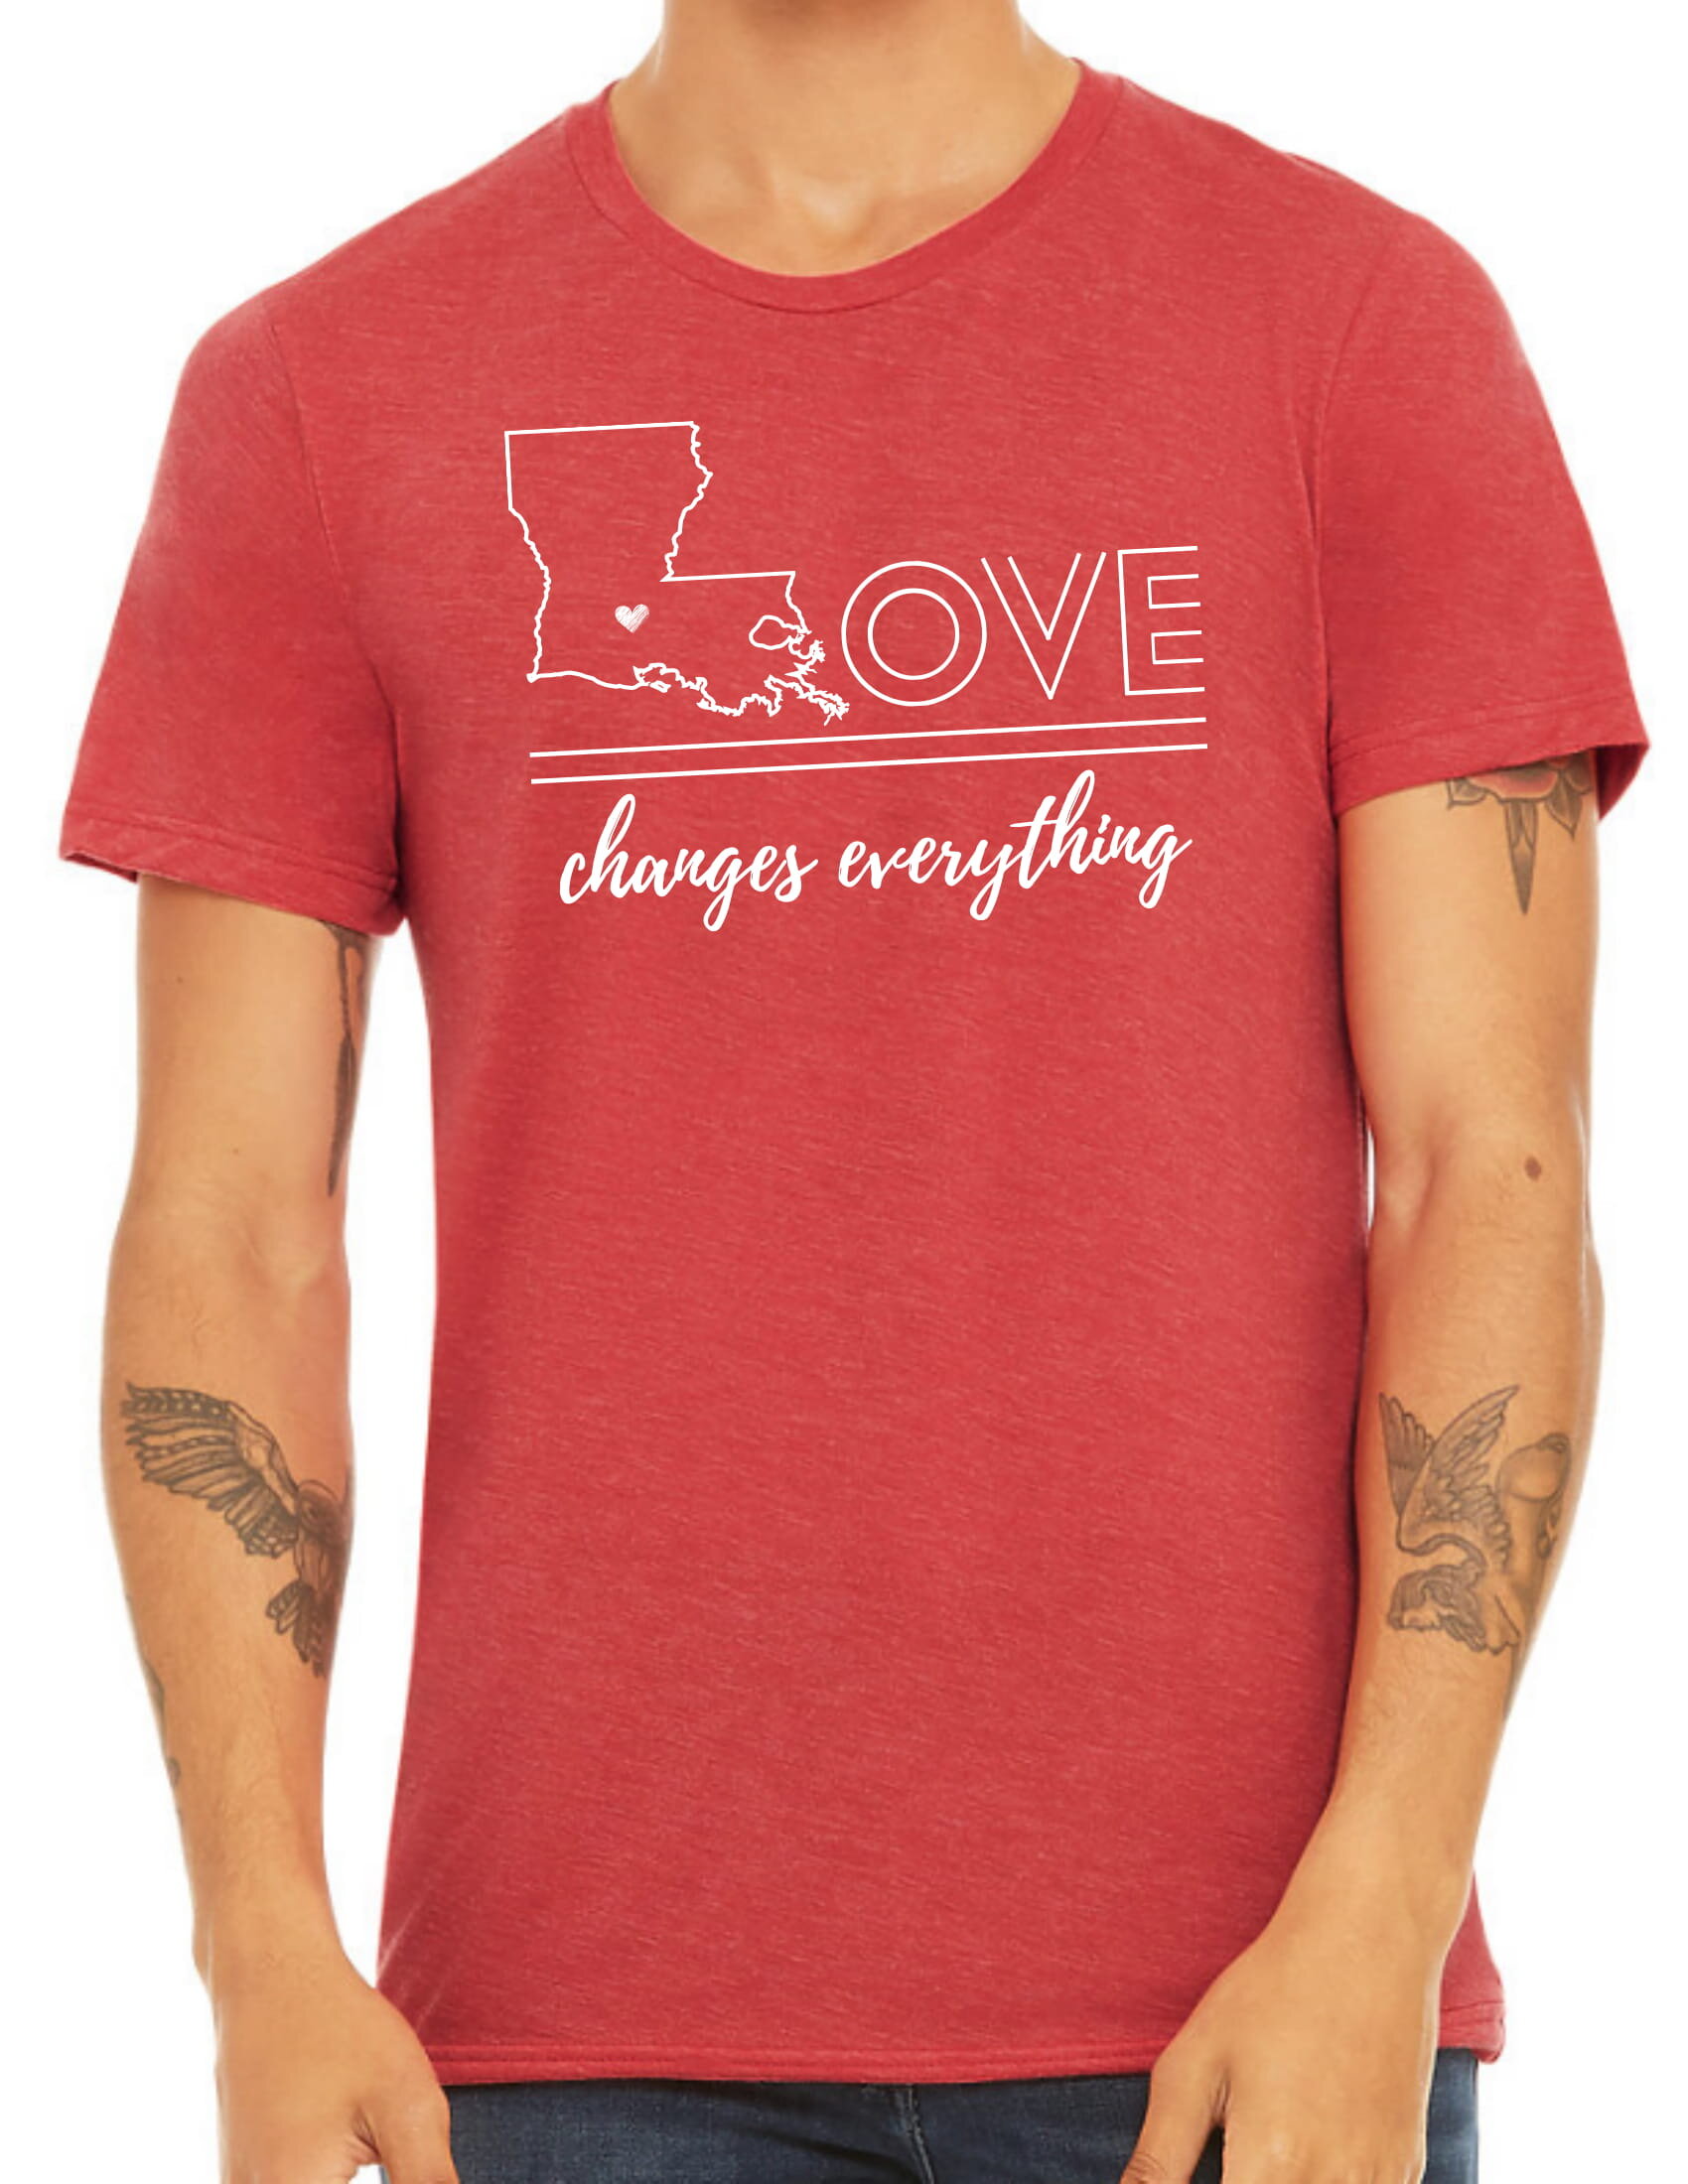 Louisiana Purchase Song Women's T-Shirt